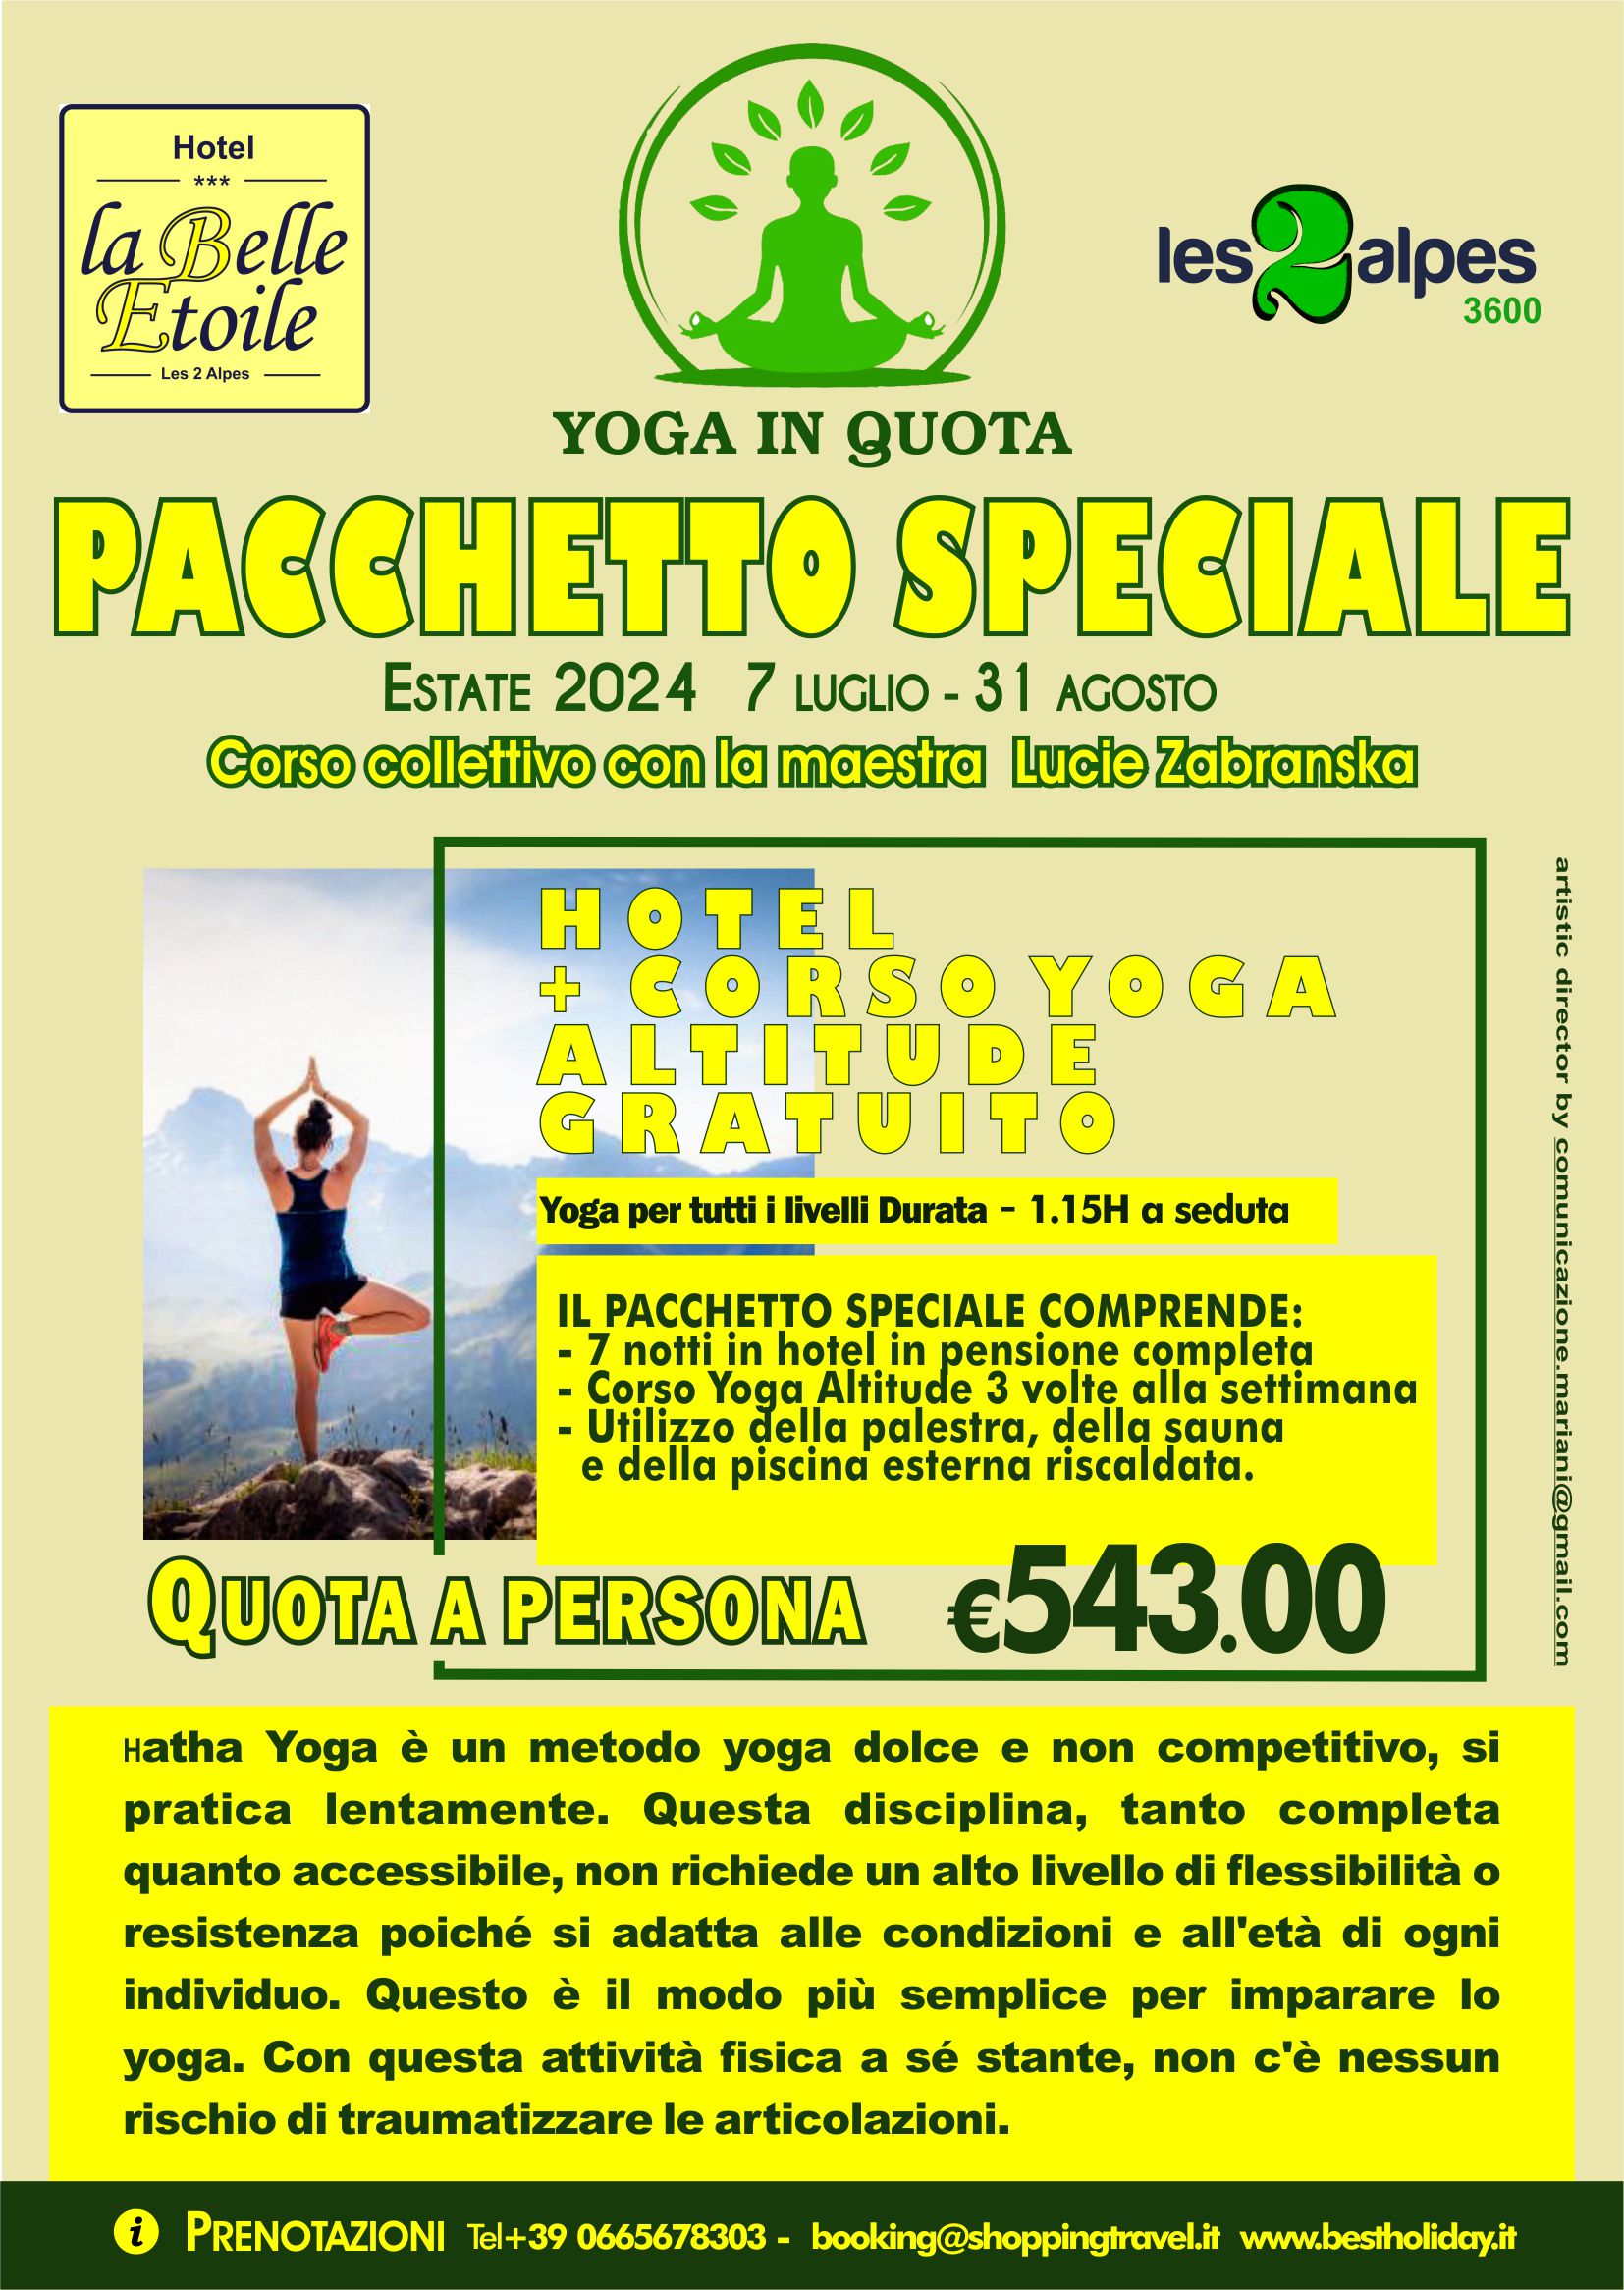 Speciale pacchetto Yoga estate 2024